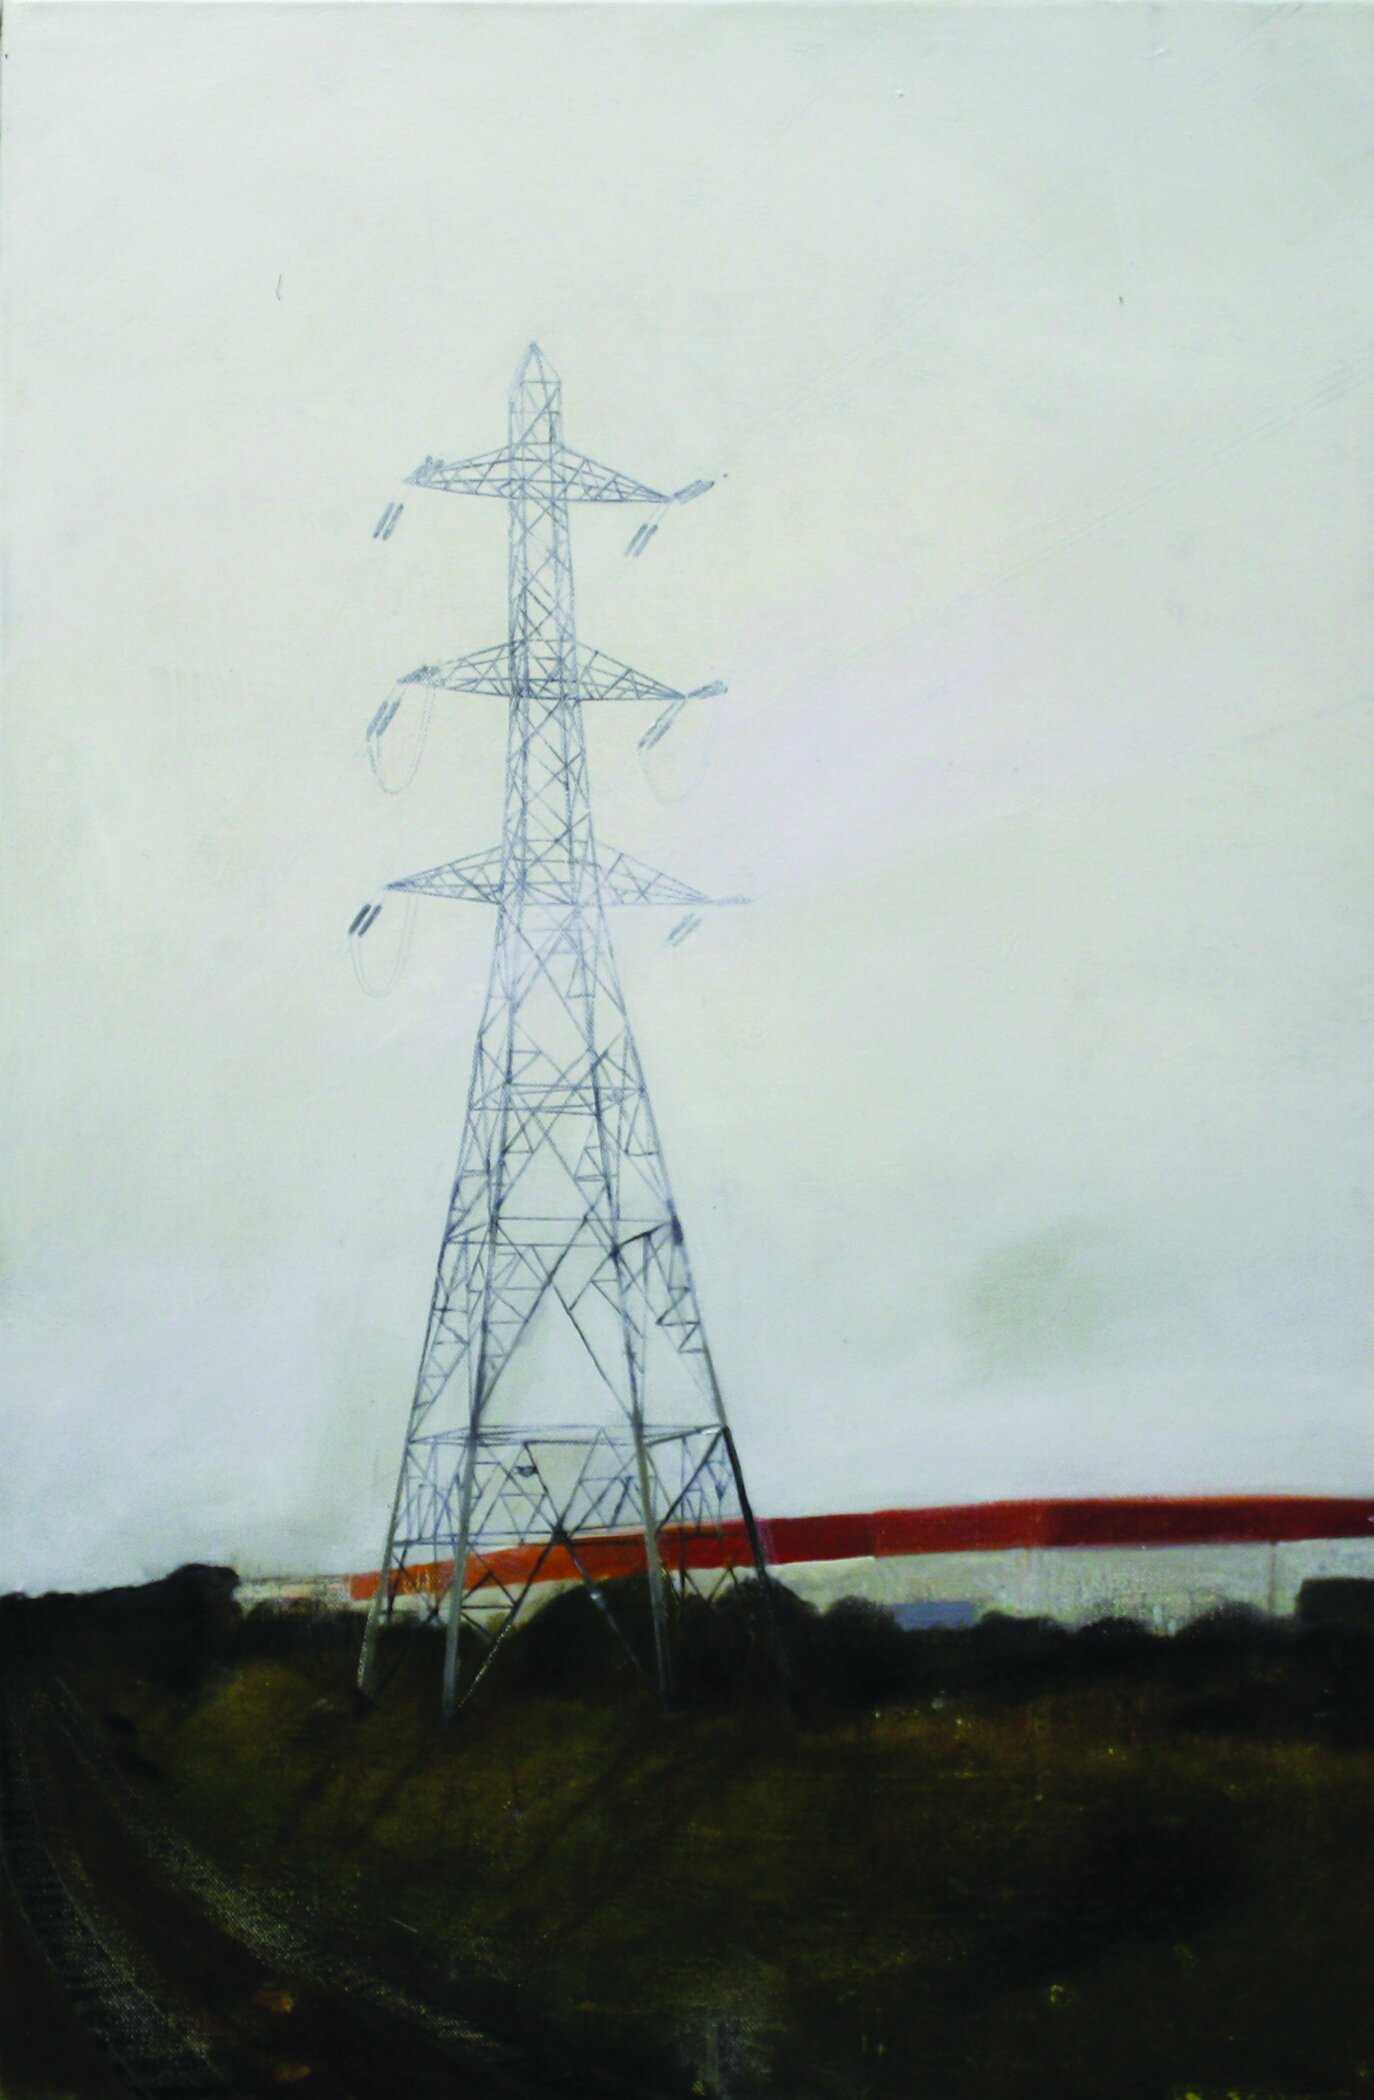   Edgeland 3   2012, oil on linen  50 x 76 cm    